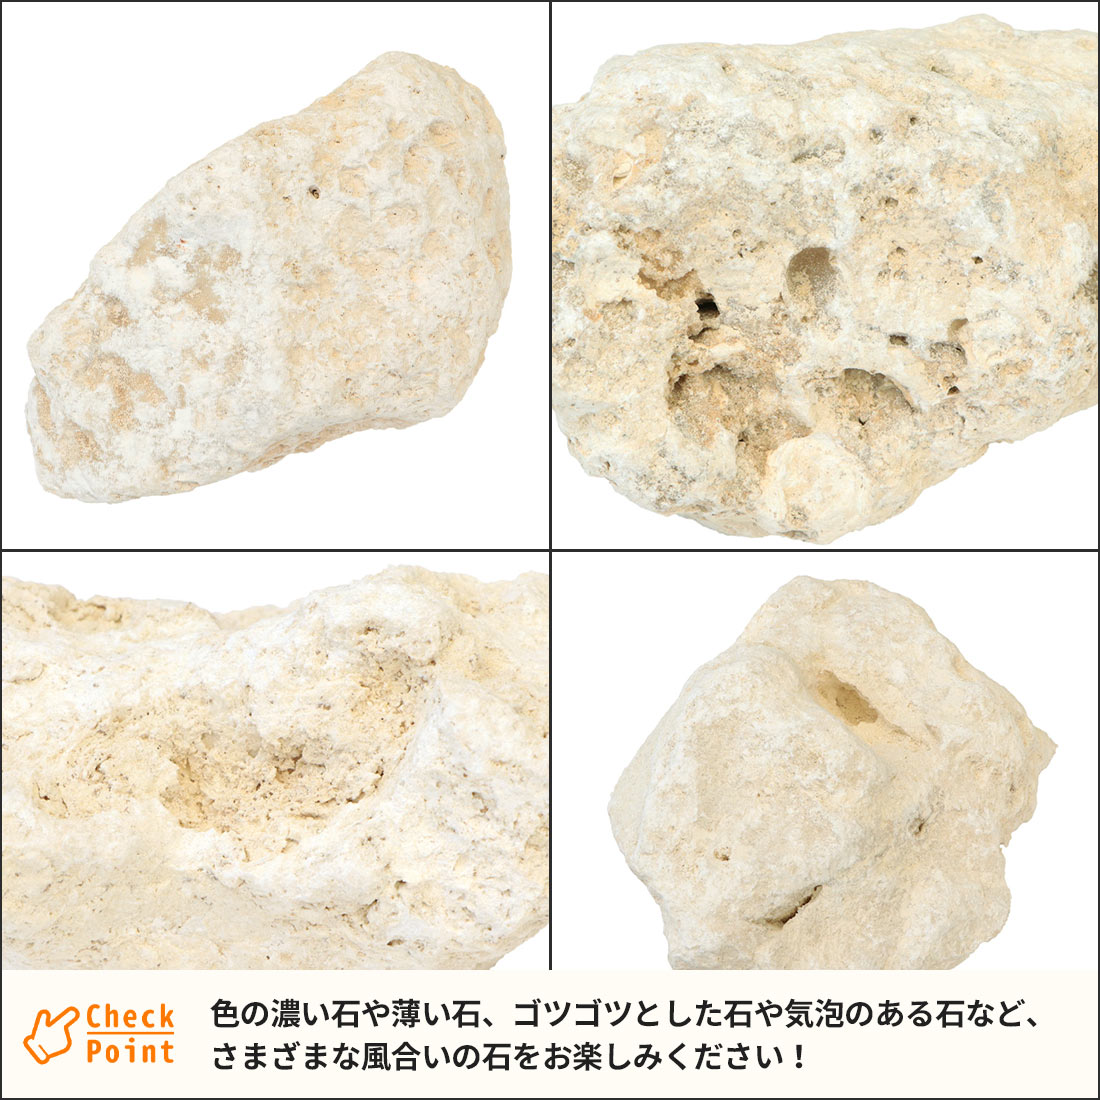 琉球石灰岩 150-300mm 18kg以上